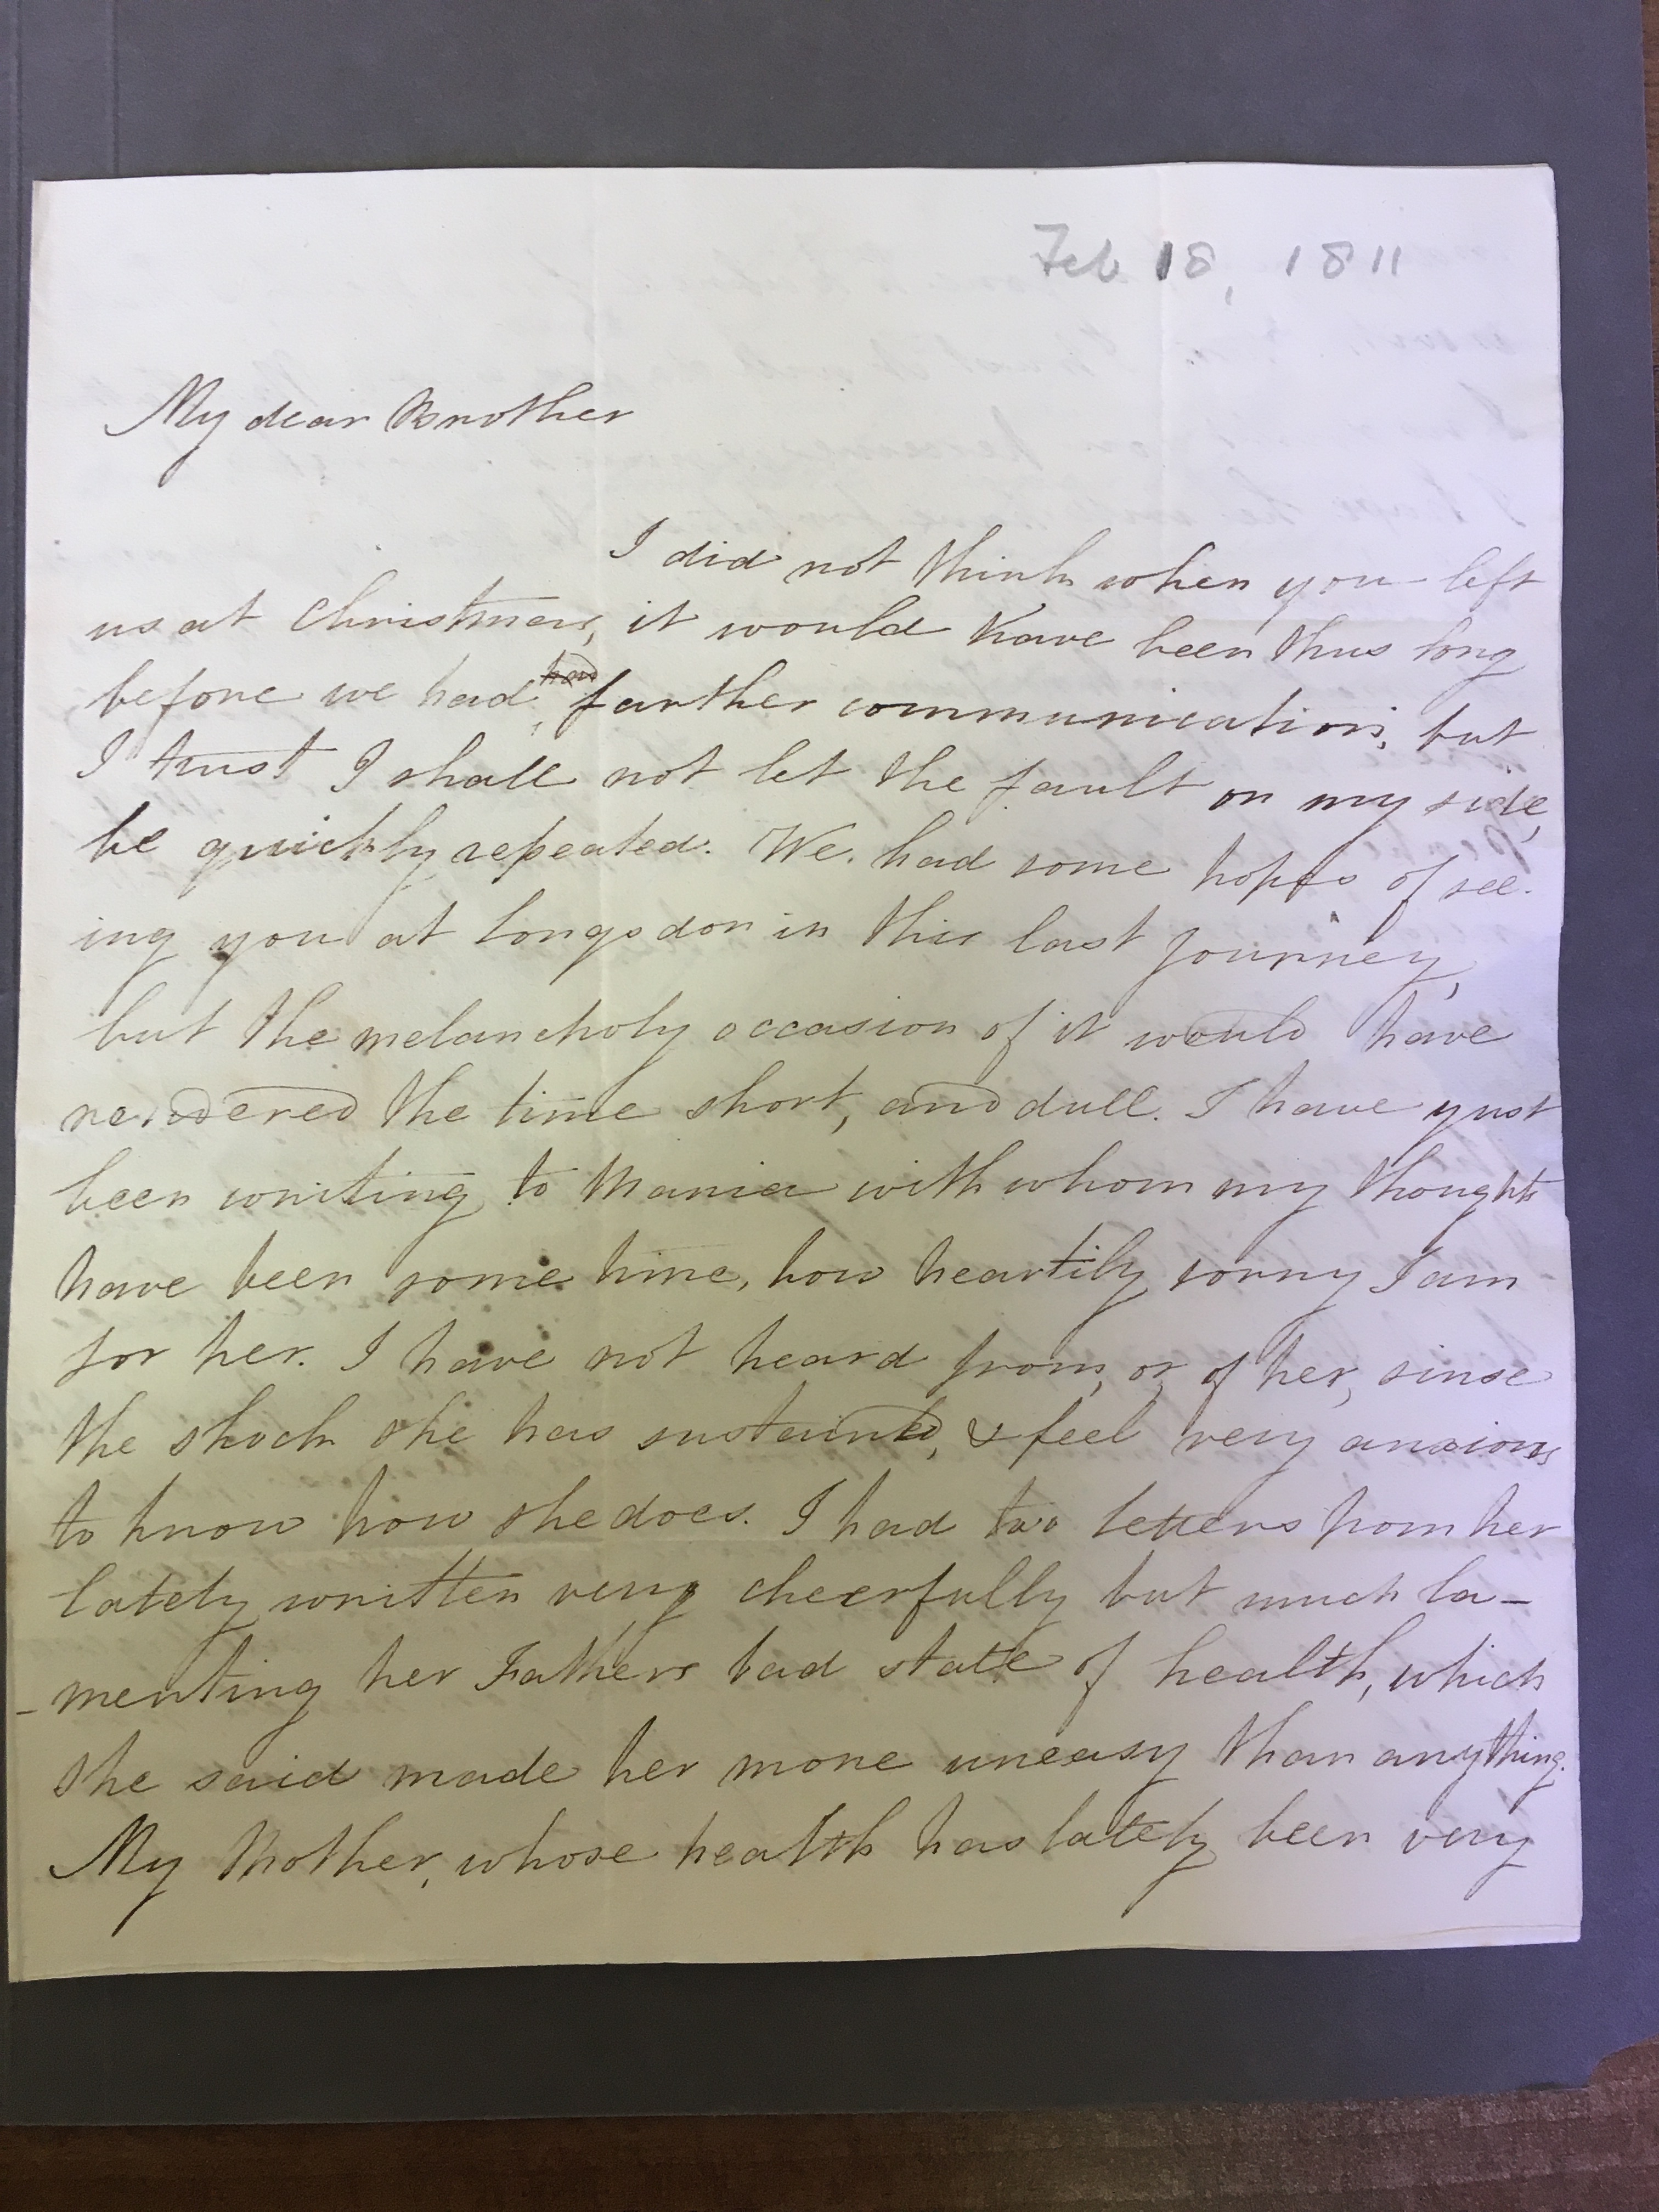 Image #1 of letter: Elizabeth Longsdon (jnr) to brother John Longsdon, 18 February 1811